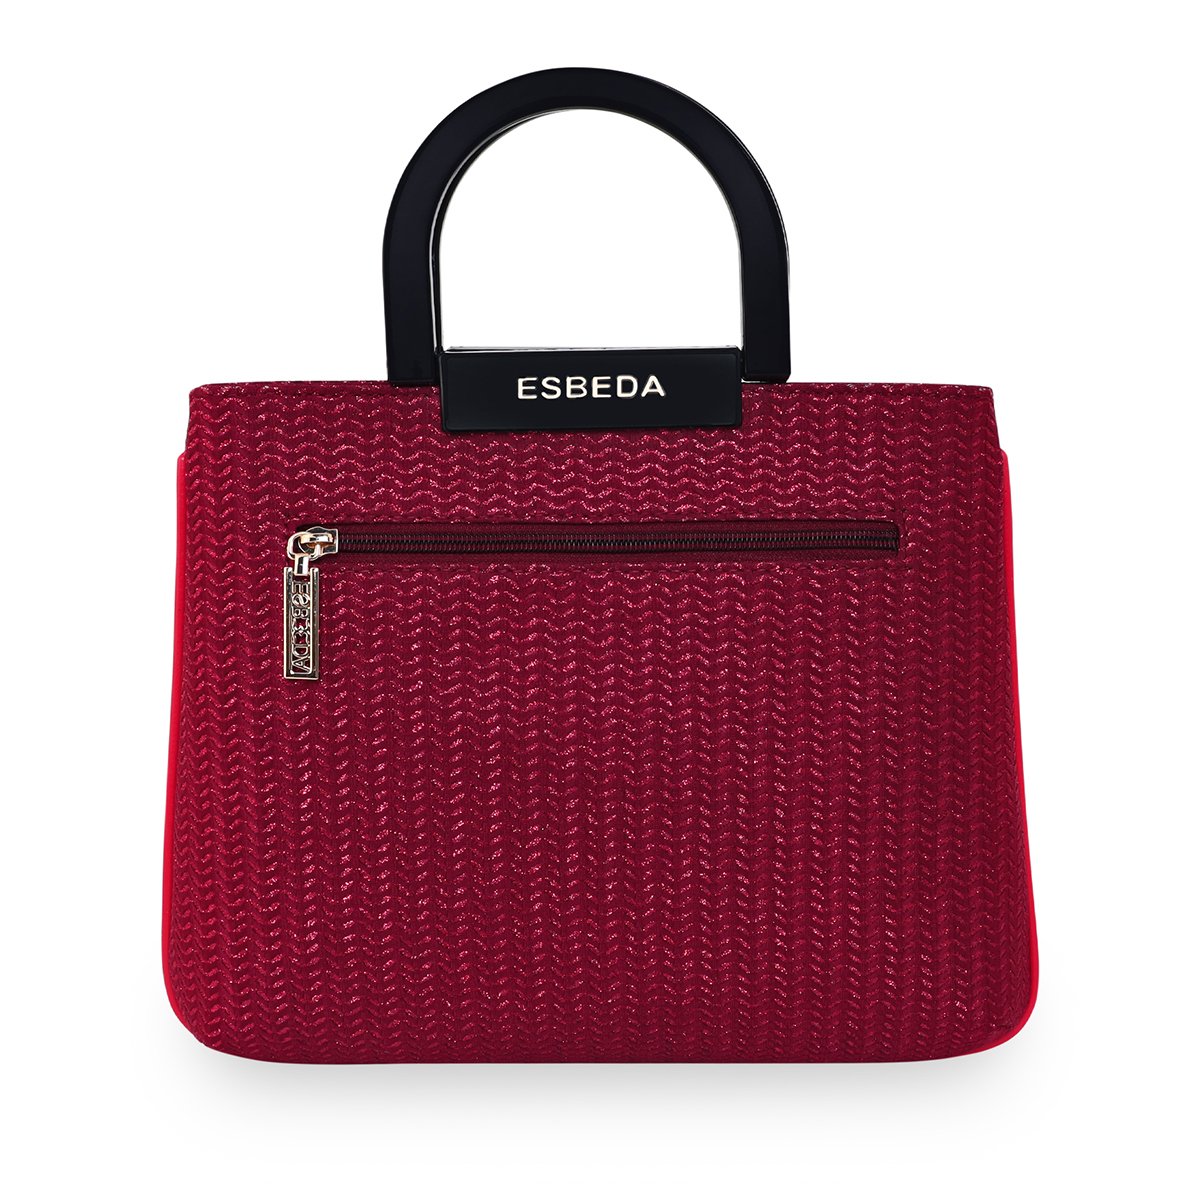 Handbags | Esbeda Handbag | Freeup